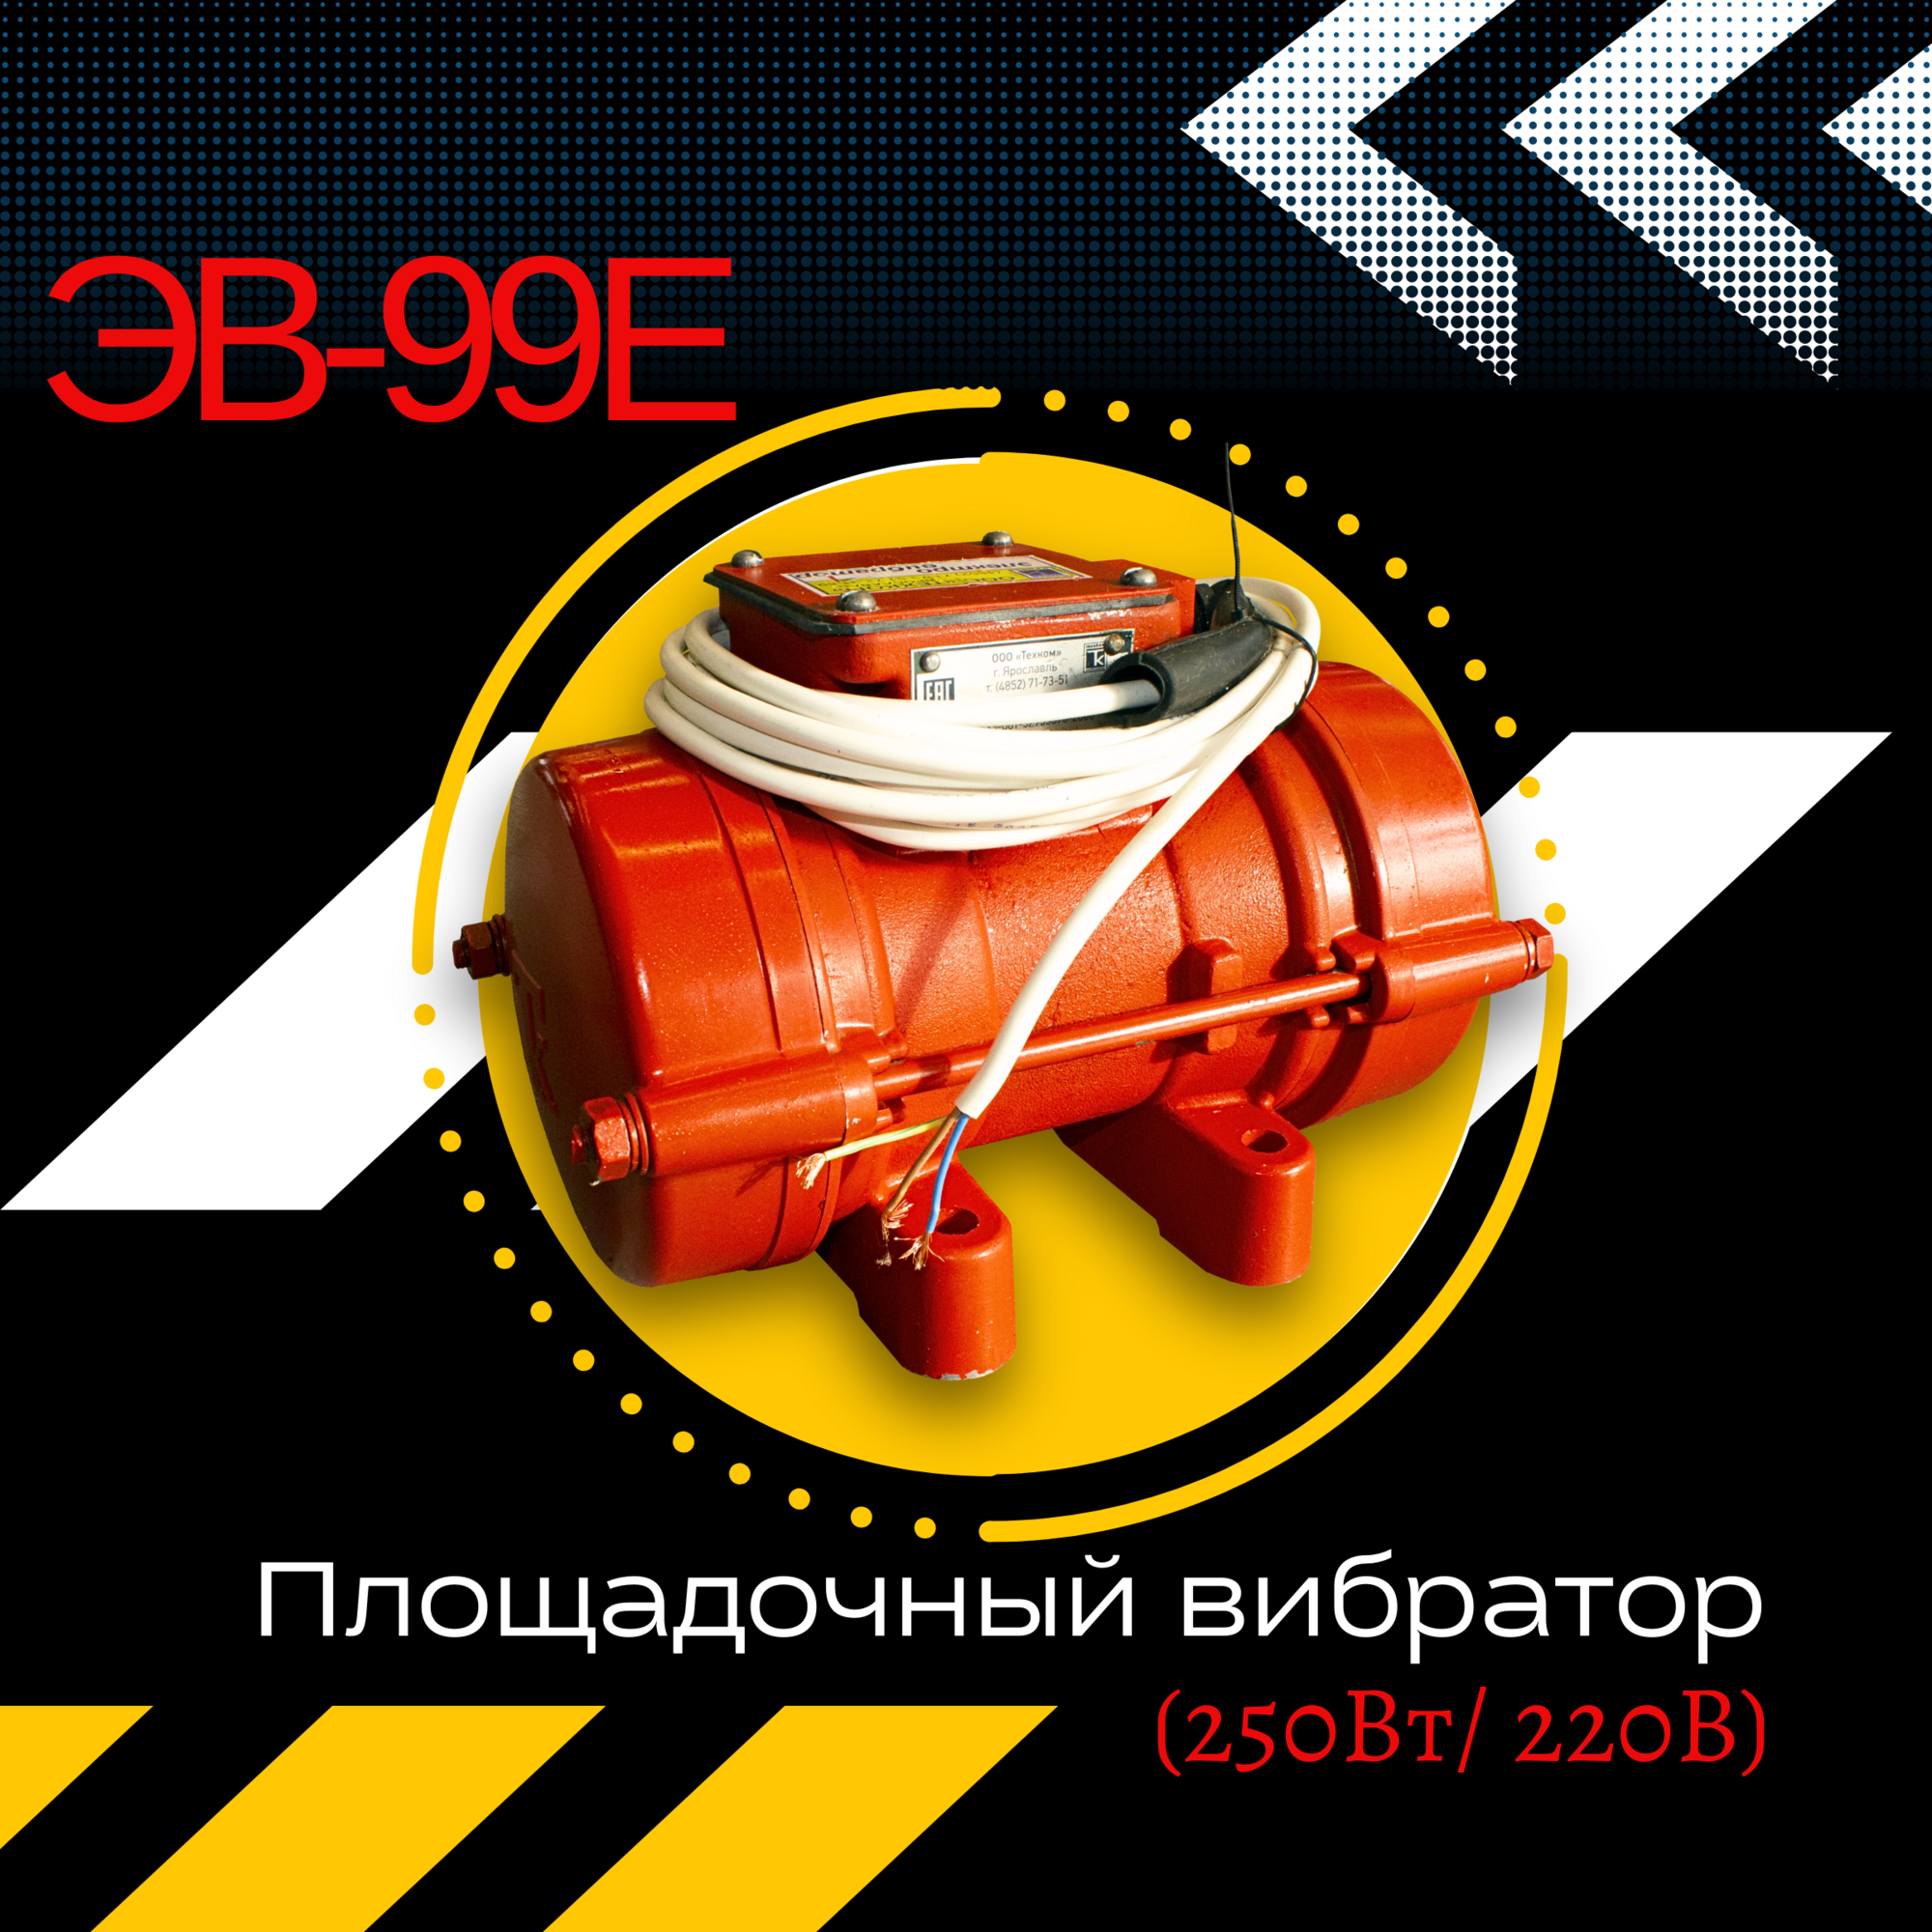 Площадочный вибратор TeaM ЭВ-99Е (250Вт/ 220В)